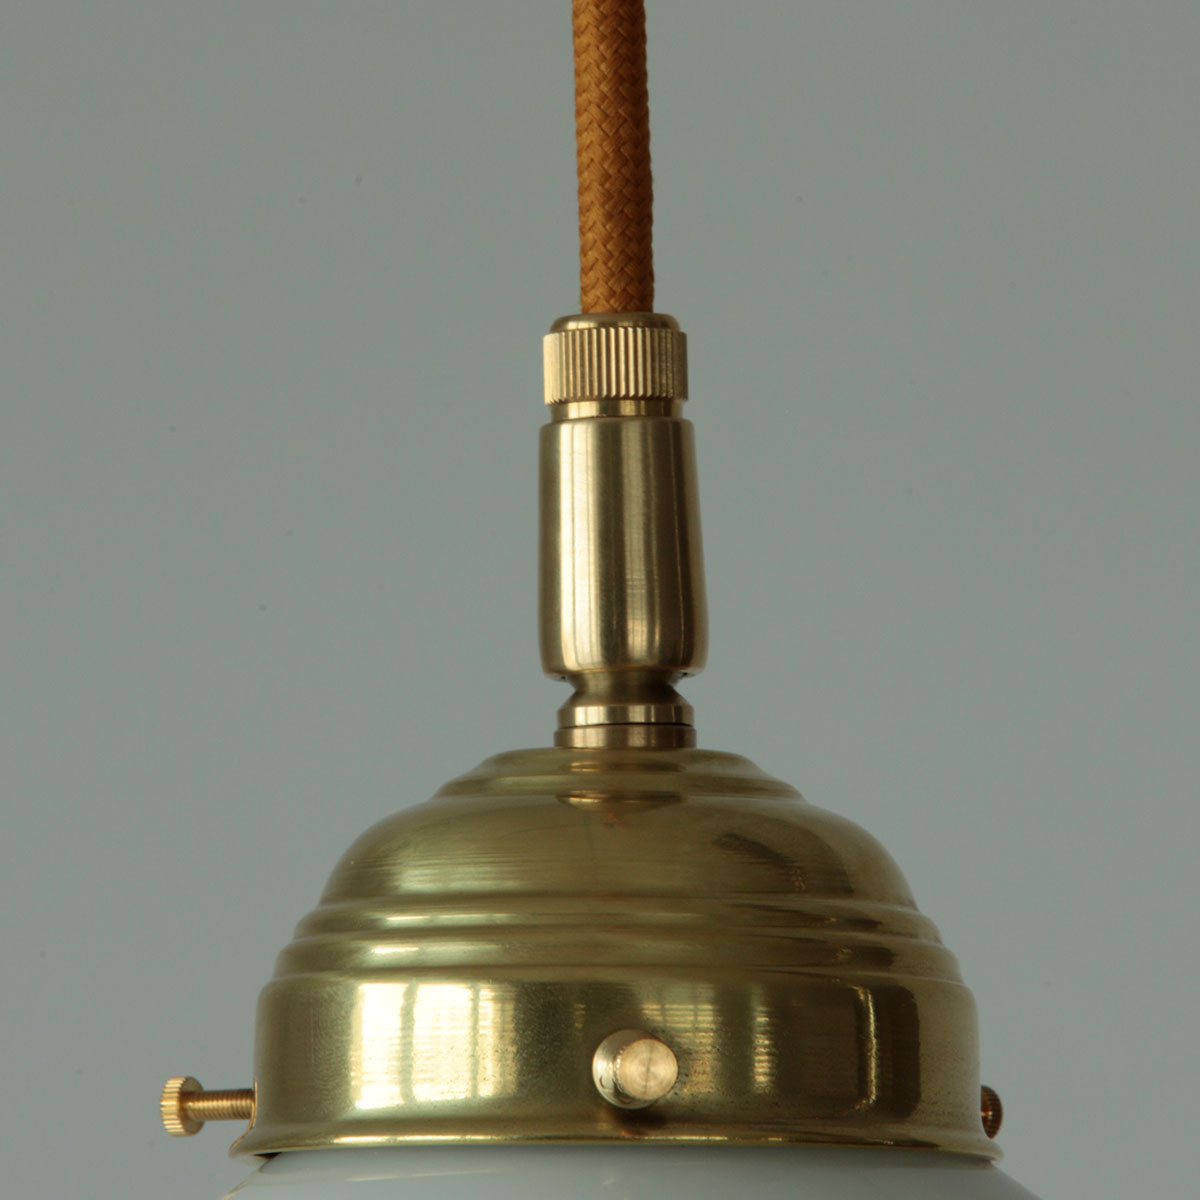 Kleine Pendelleuchte mit opalem Becher-Glasschirm (Ø 15 cm): Messing poliert, unlackiert